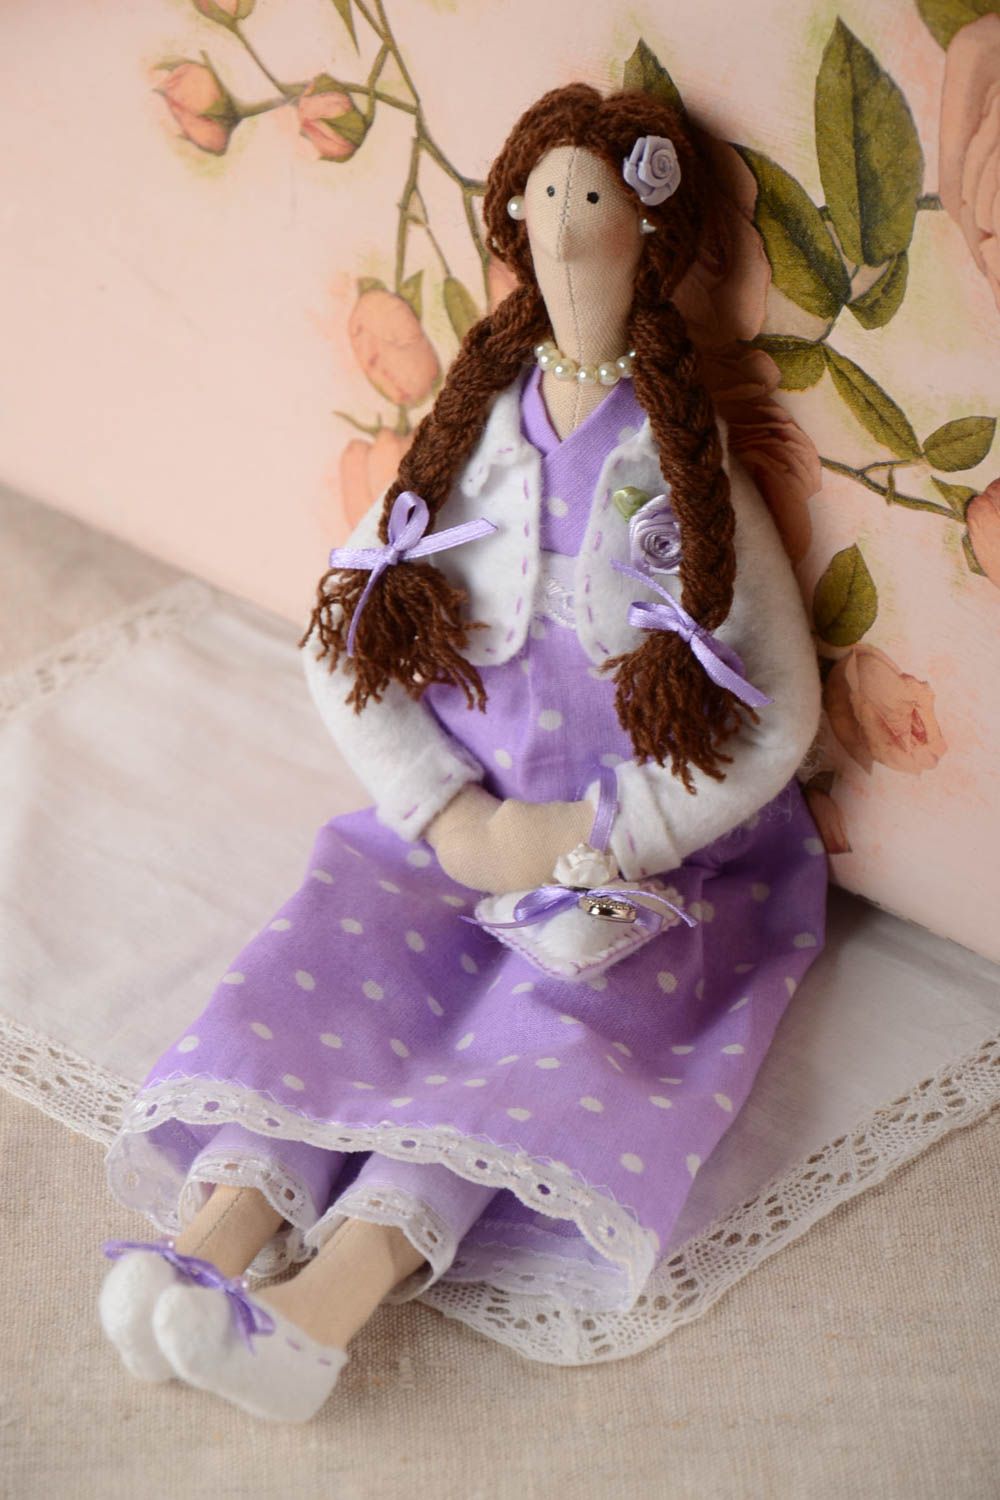 Авторская мягкая кукла для интерьера из флиса и хлопка Девочка ручной работы фото 1